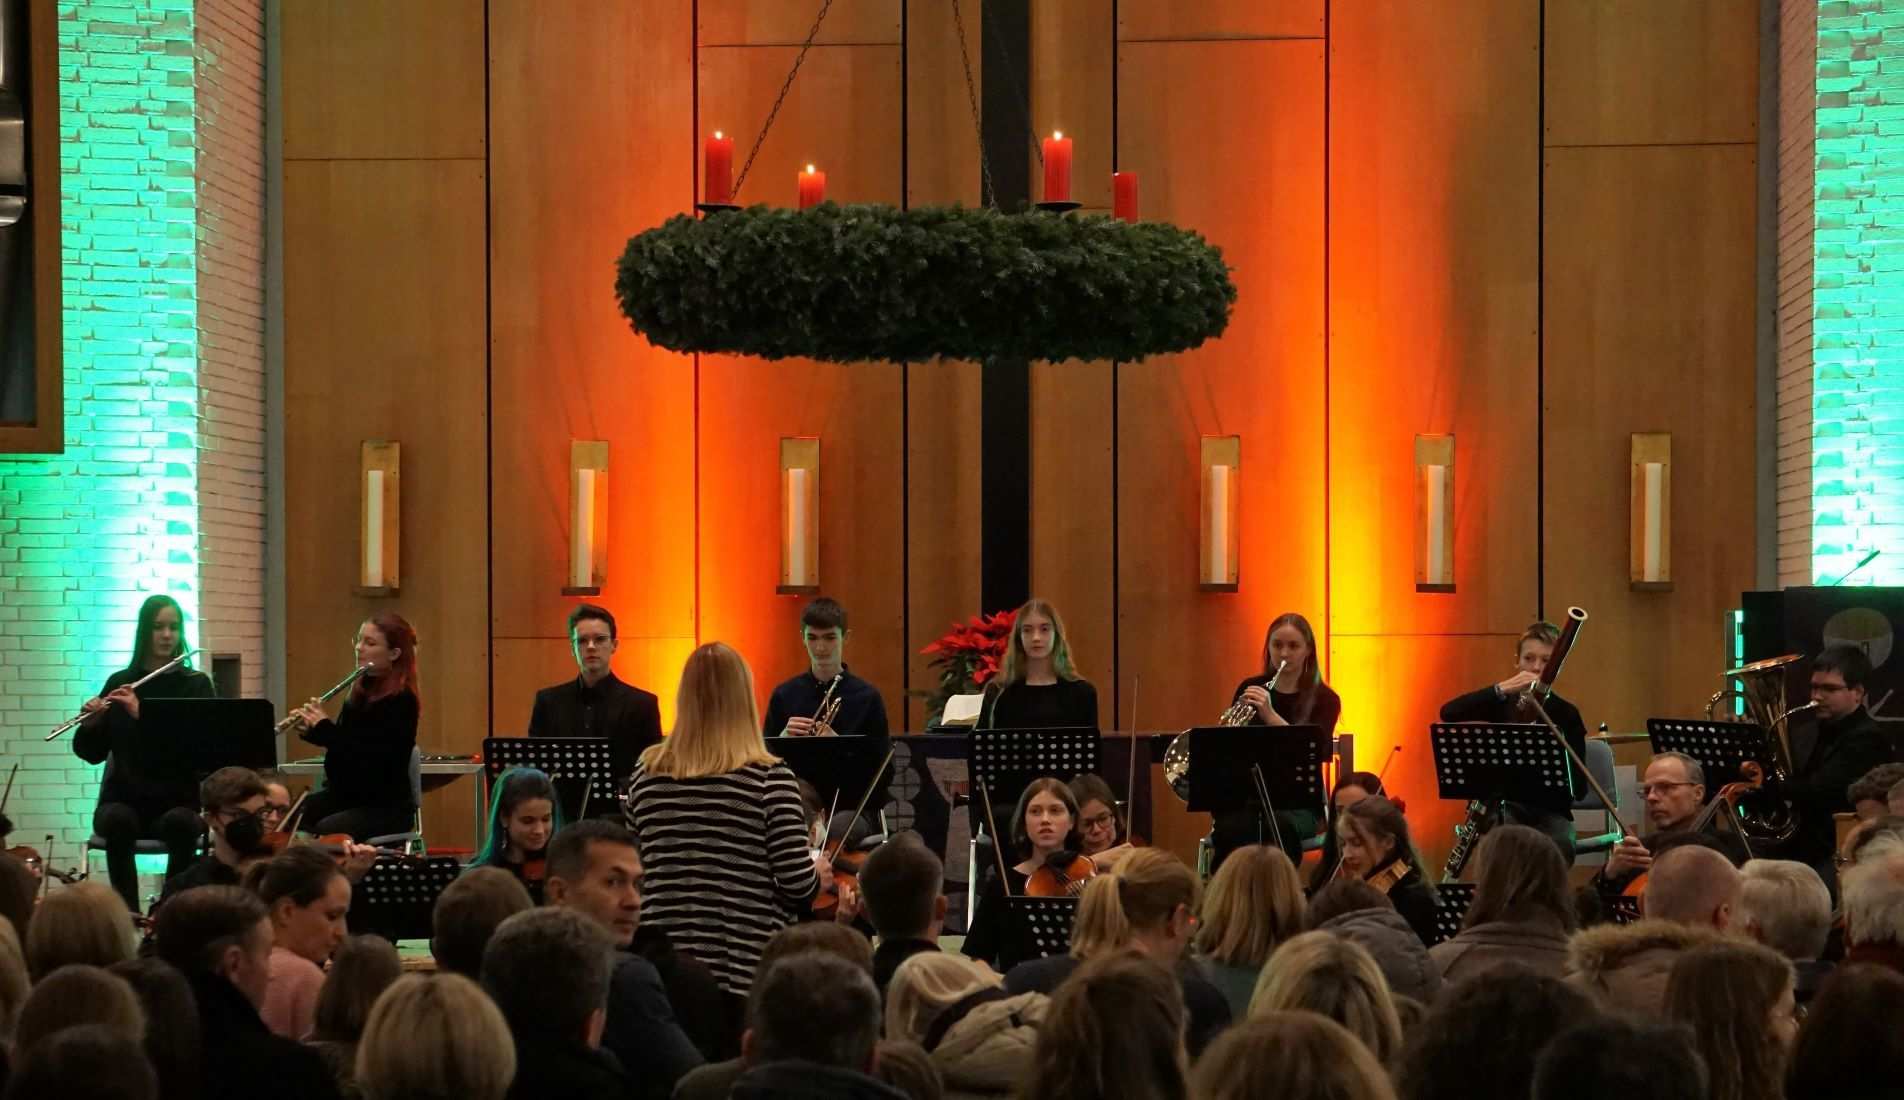 Das Gymnasium Korntal-Münchingen gestaltete einen stimmungsvollen Konzertabend auf hohem musikalischem Niveau (Quelle: privat)